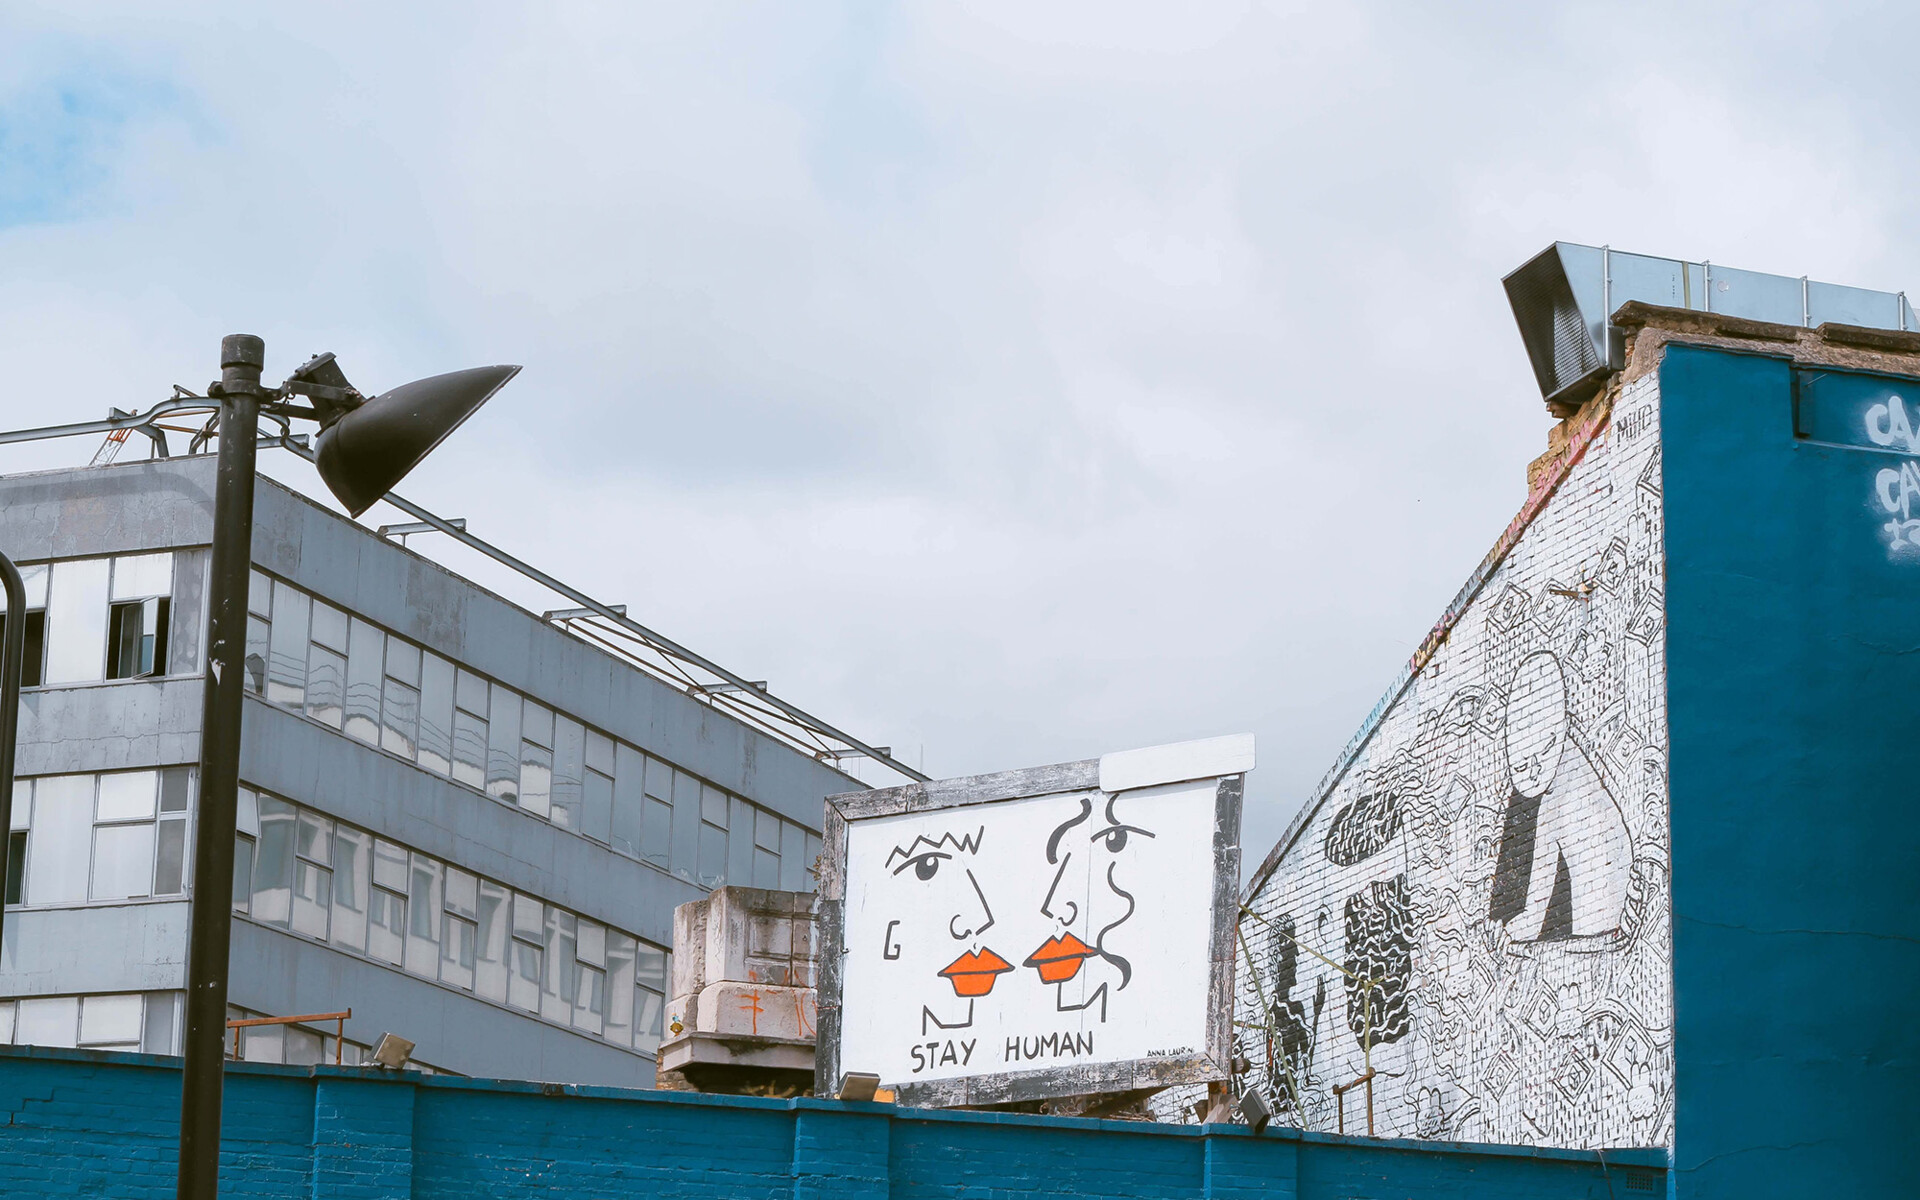 Titelbild bei politischbilden.de: ein altes Industriegebäude mit einem Graffiti mit sich küssenden Gesichtern